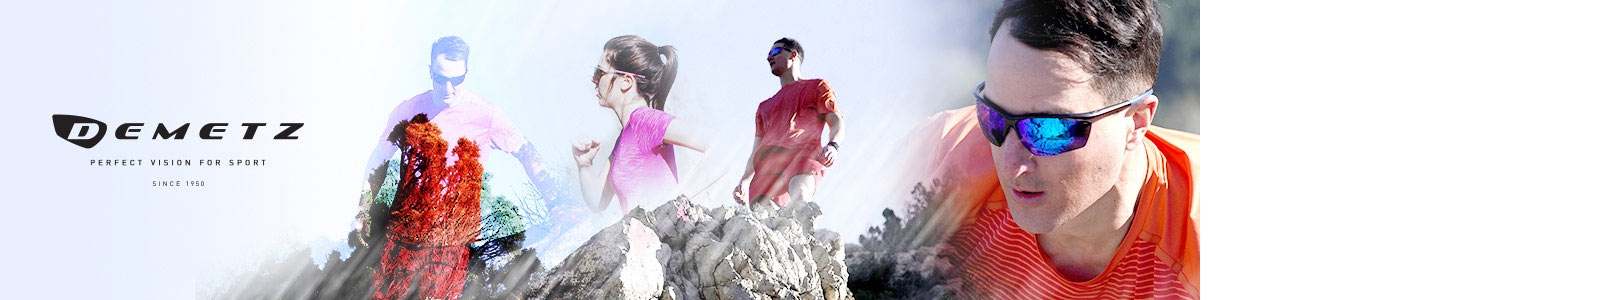 Image mettant en avant des sportifs sur une montagne portant des lunettes de soleil Demetz